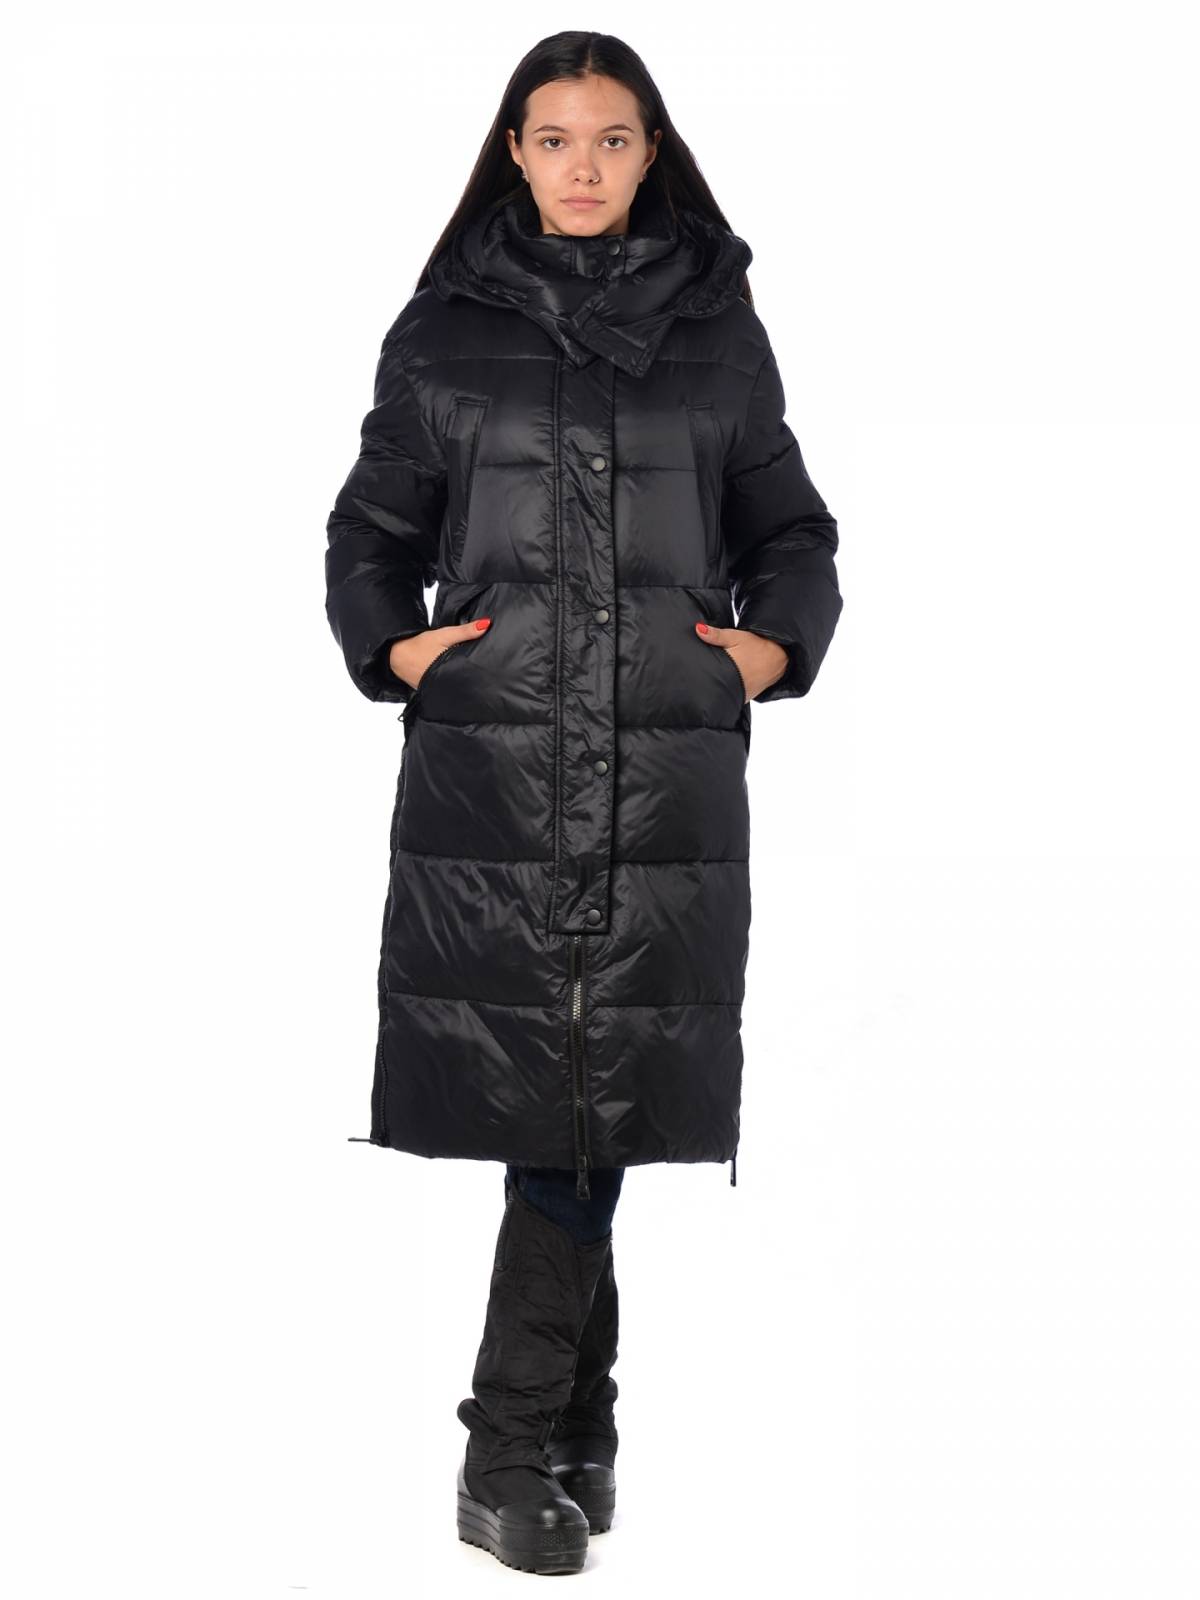 Пальто женское EVACANA 3923 черное 52 RU